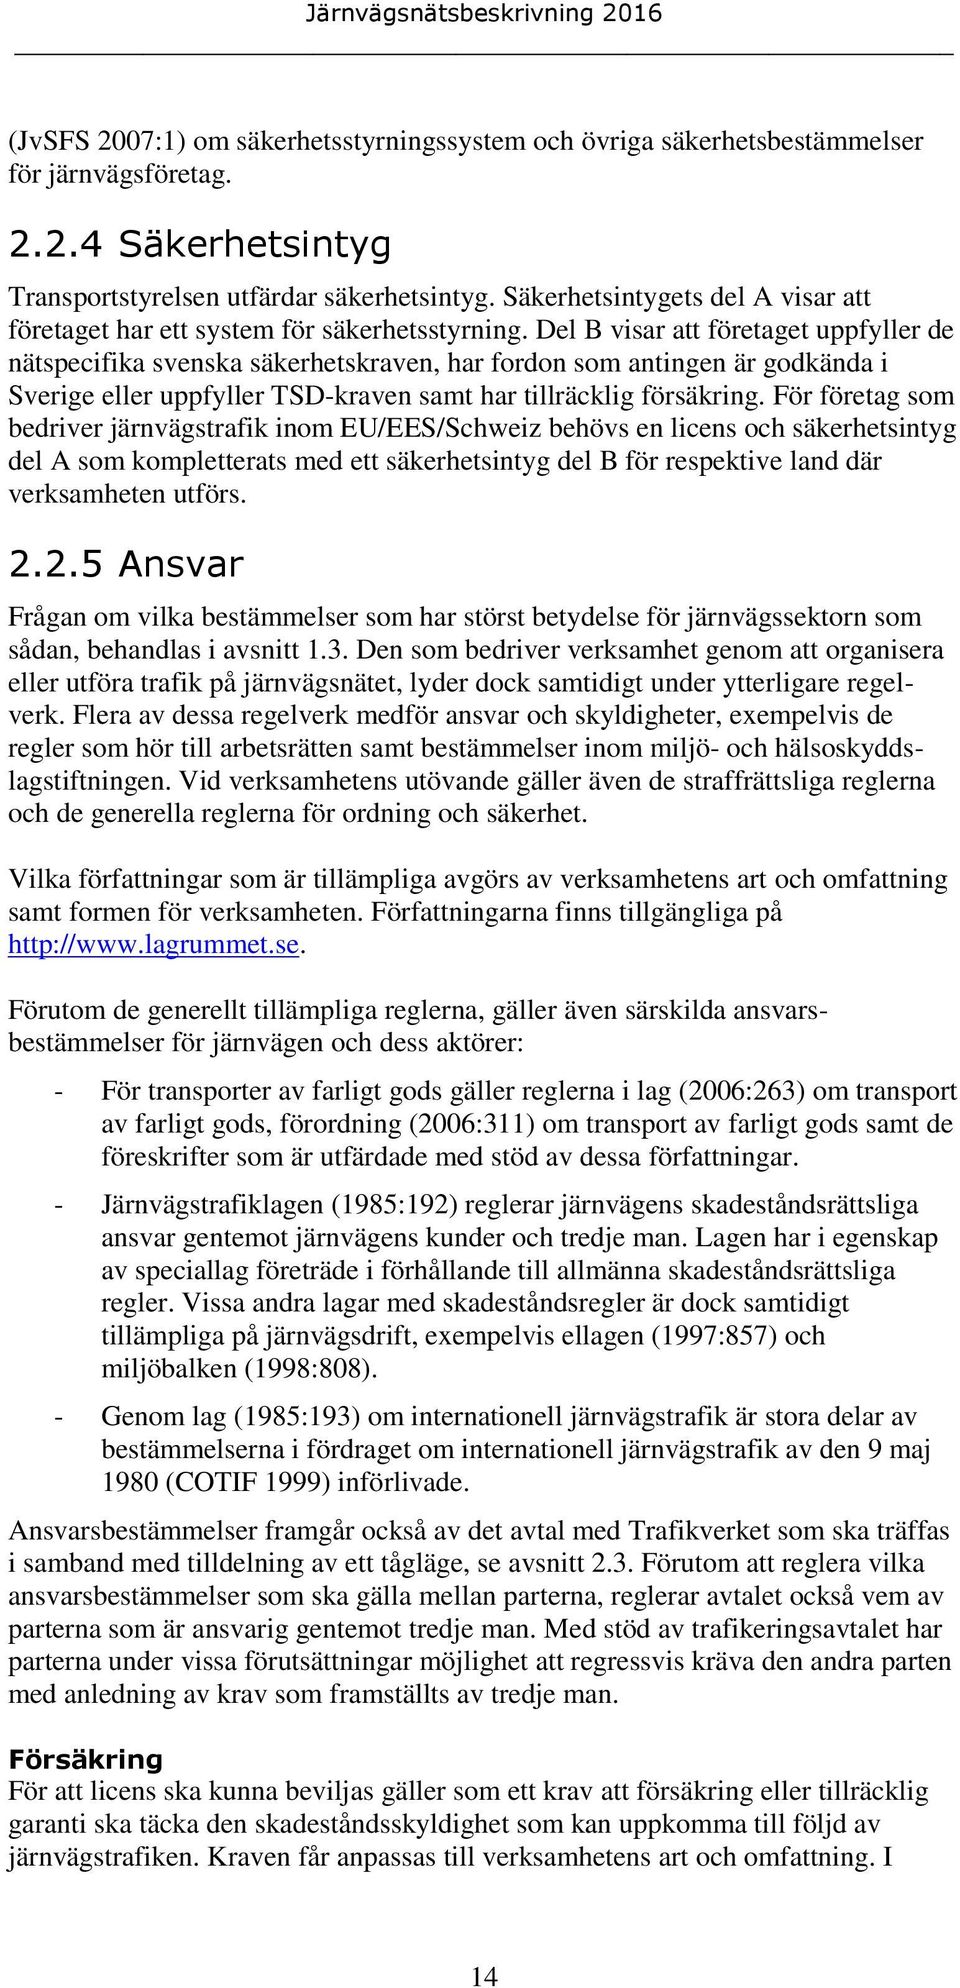 Del B visar att företaget uppfyller de nätspecifika svenska säkerhetskraven, har fordon som antingen är godkända i Sverige eller uppfyller TSD-kraven samt har tillräcklig försäkring.